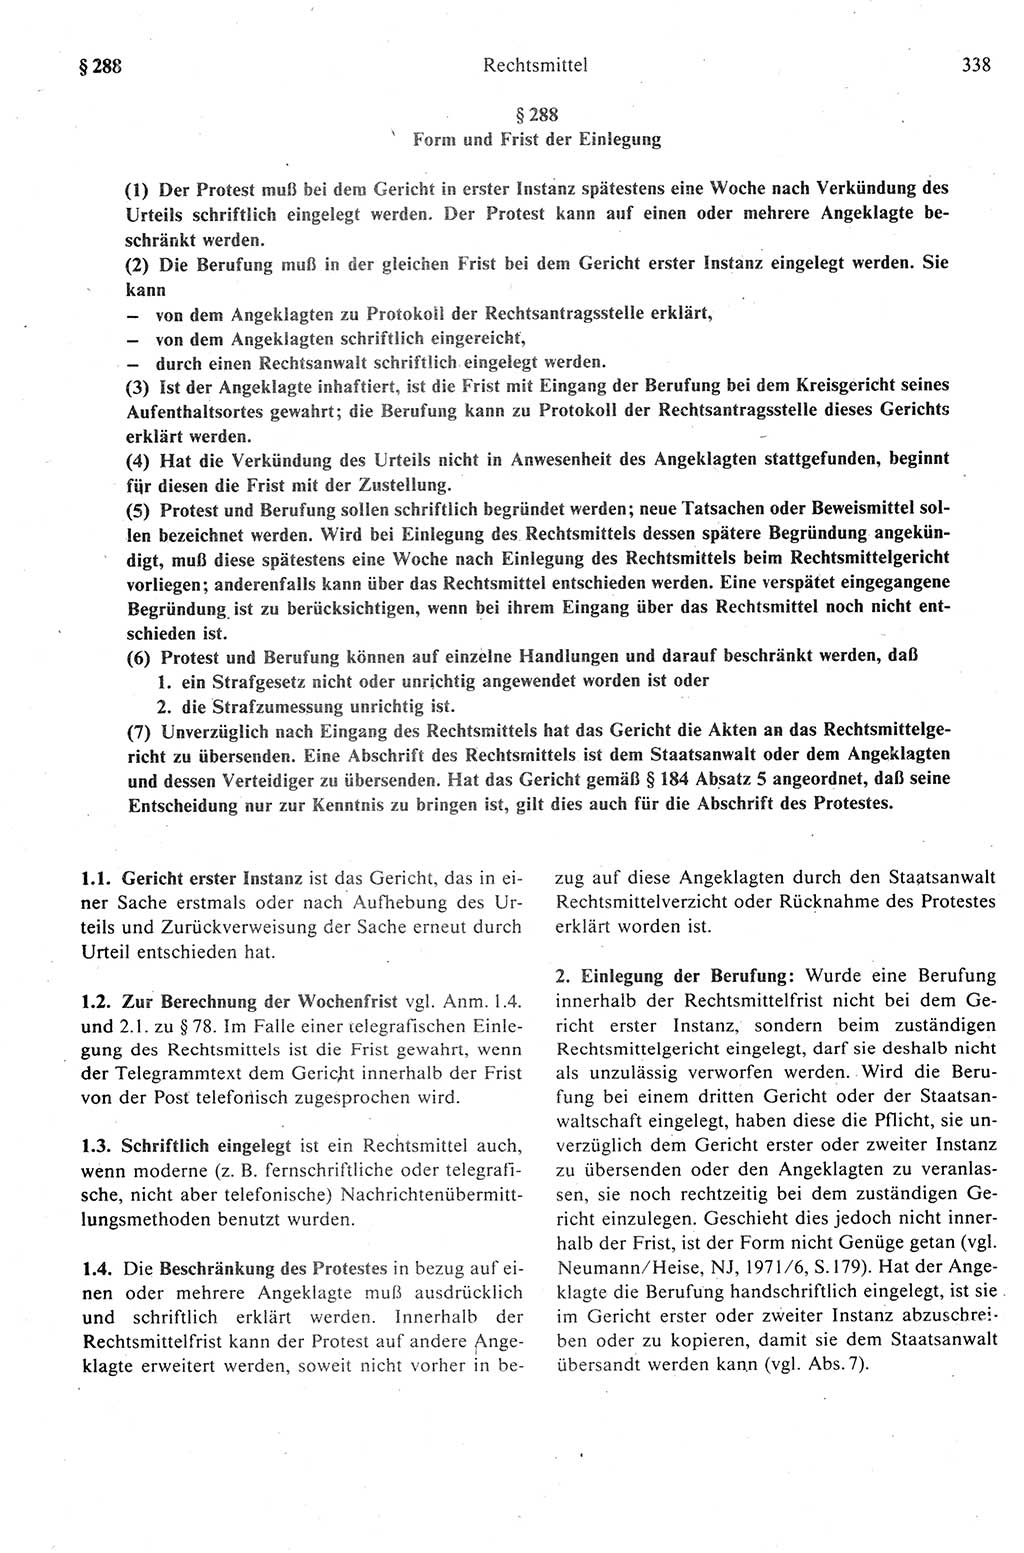 Strafprozeßrecht der DDR (Deutsche Demokratische Republik), Kommentar zur Strafprozeßordnung (StPO) 1989, Seite 338 (Strafprozeßr. DDR Komm. StPO 1989, S. 338)